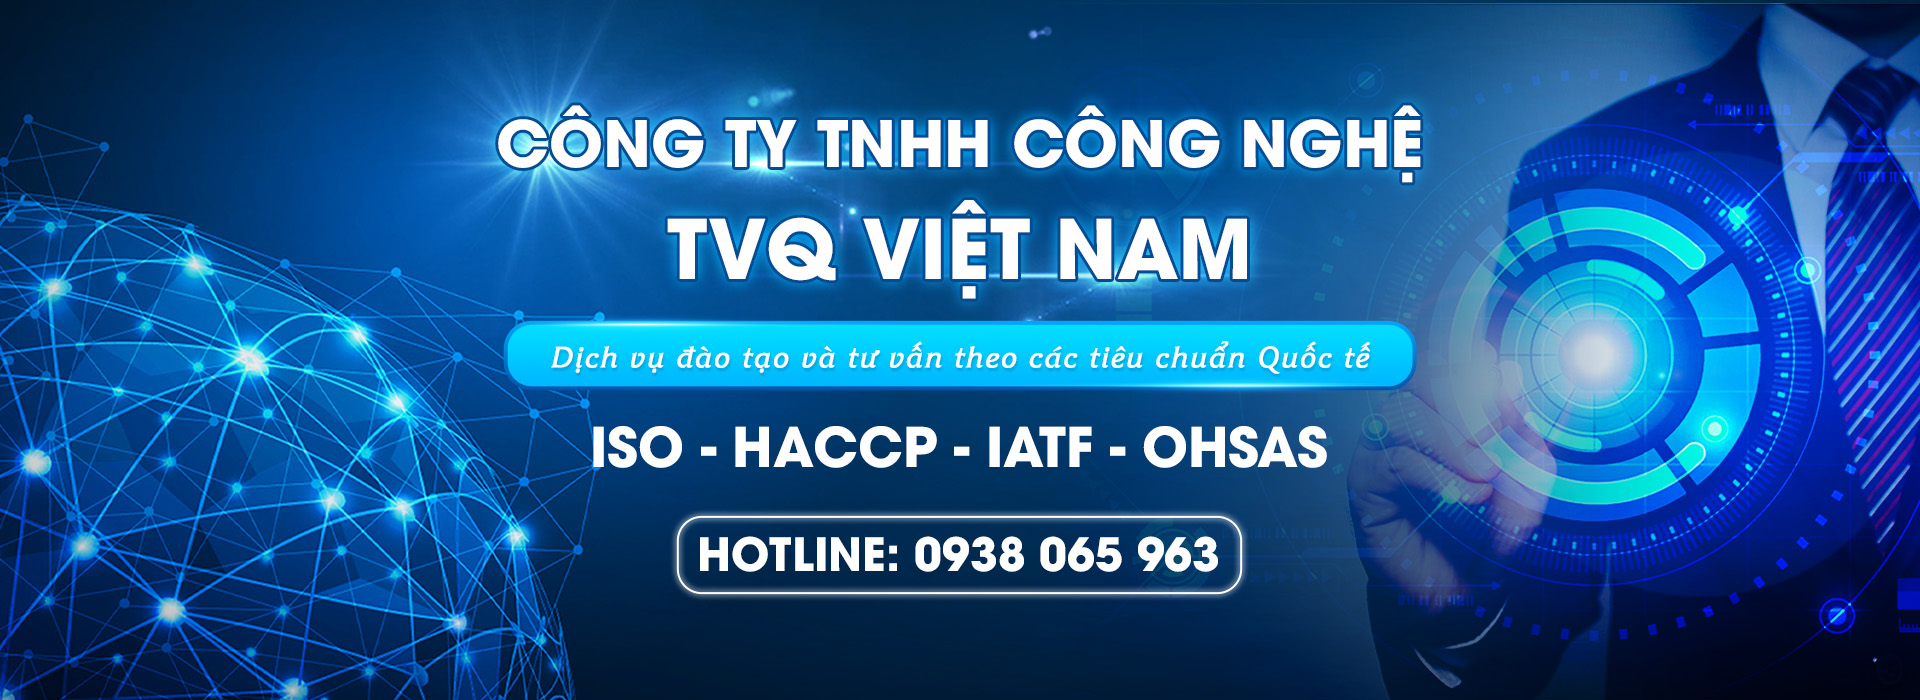 Công Ty TNHH Công Nghệ TVQ Việt Nam